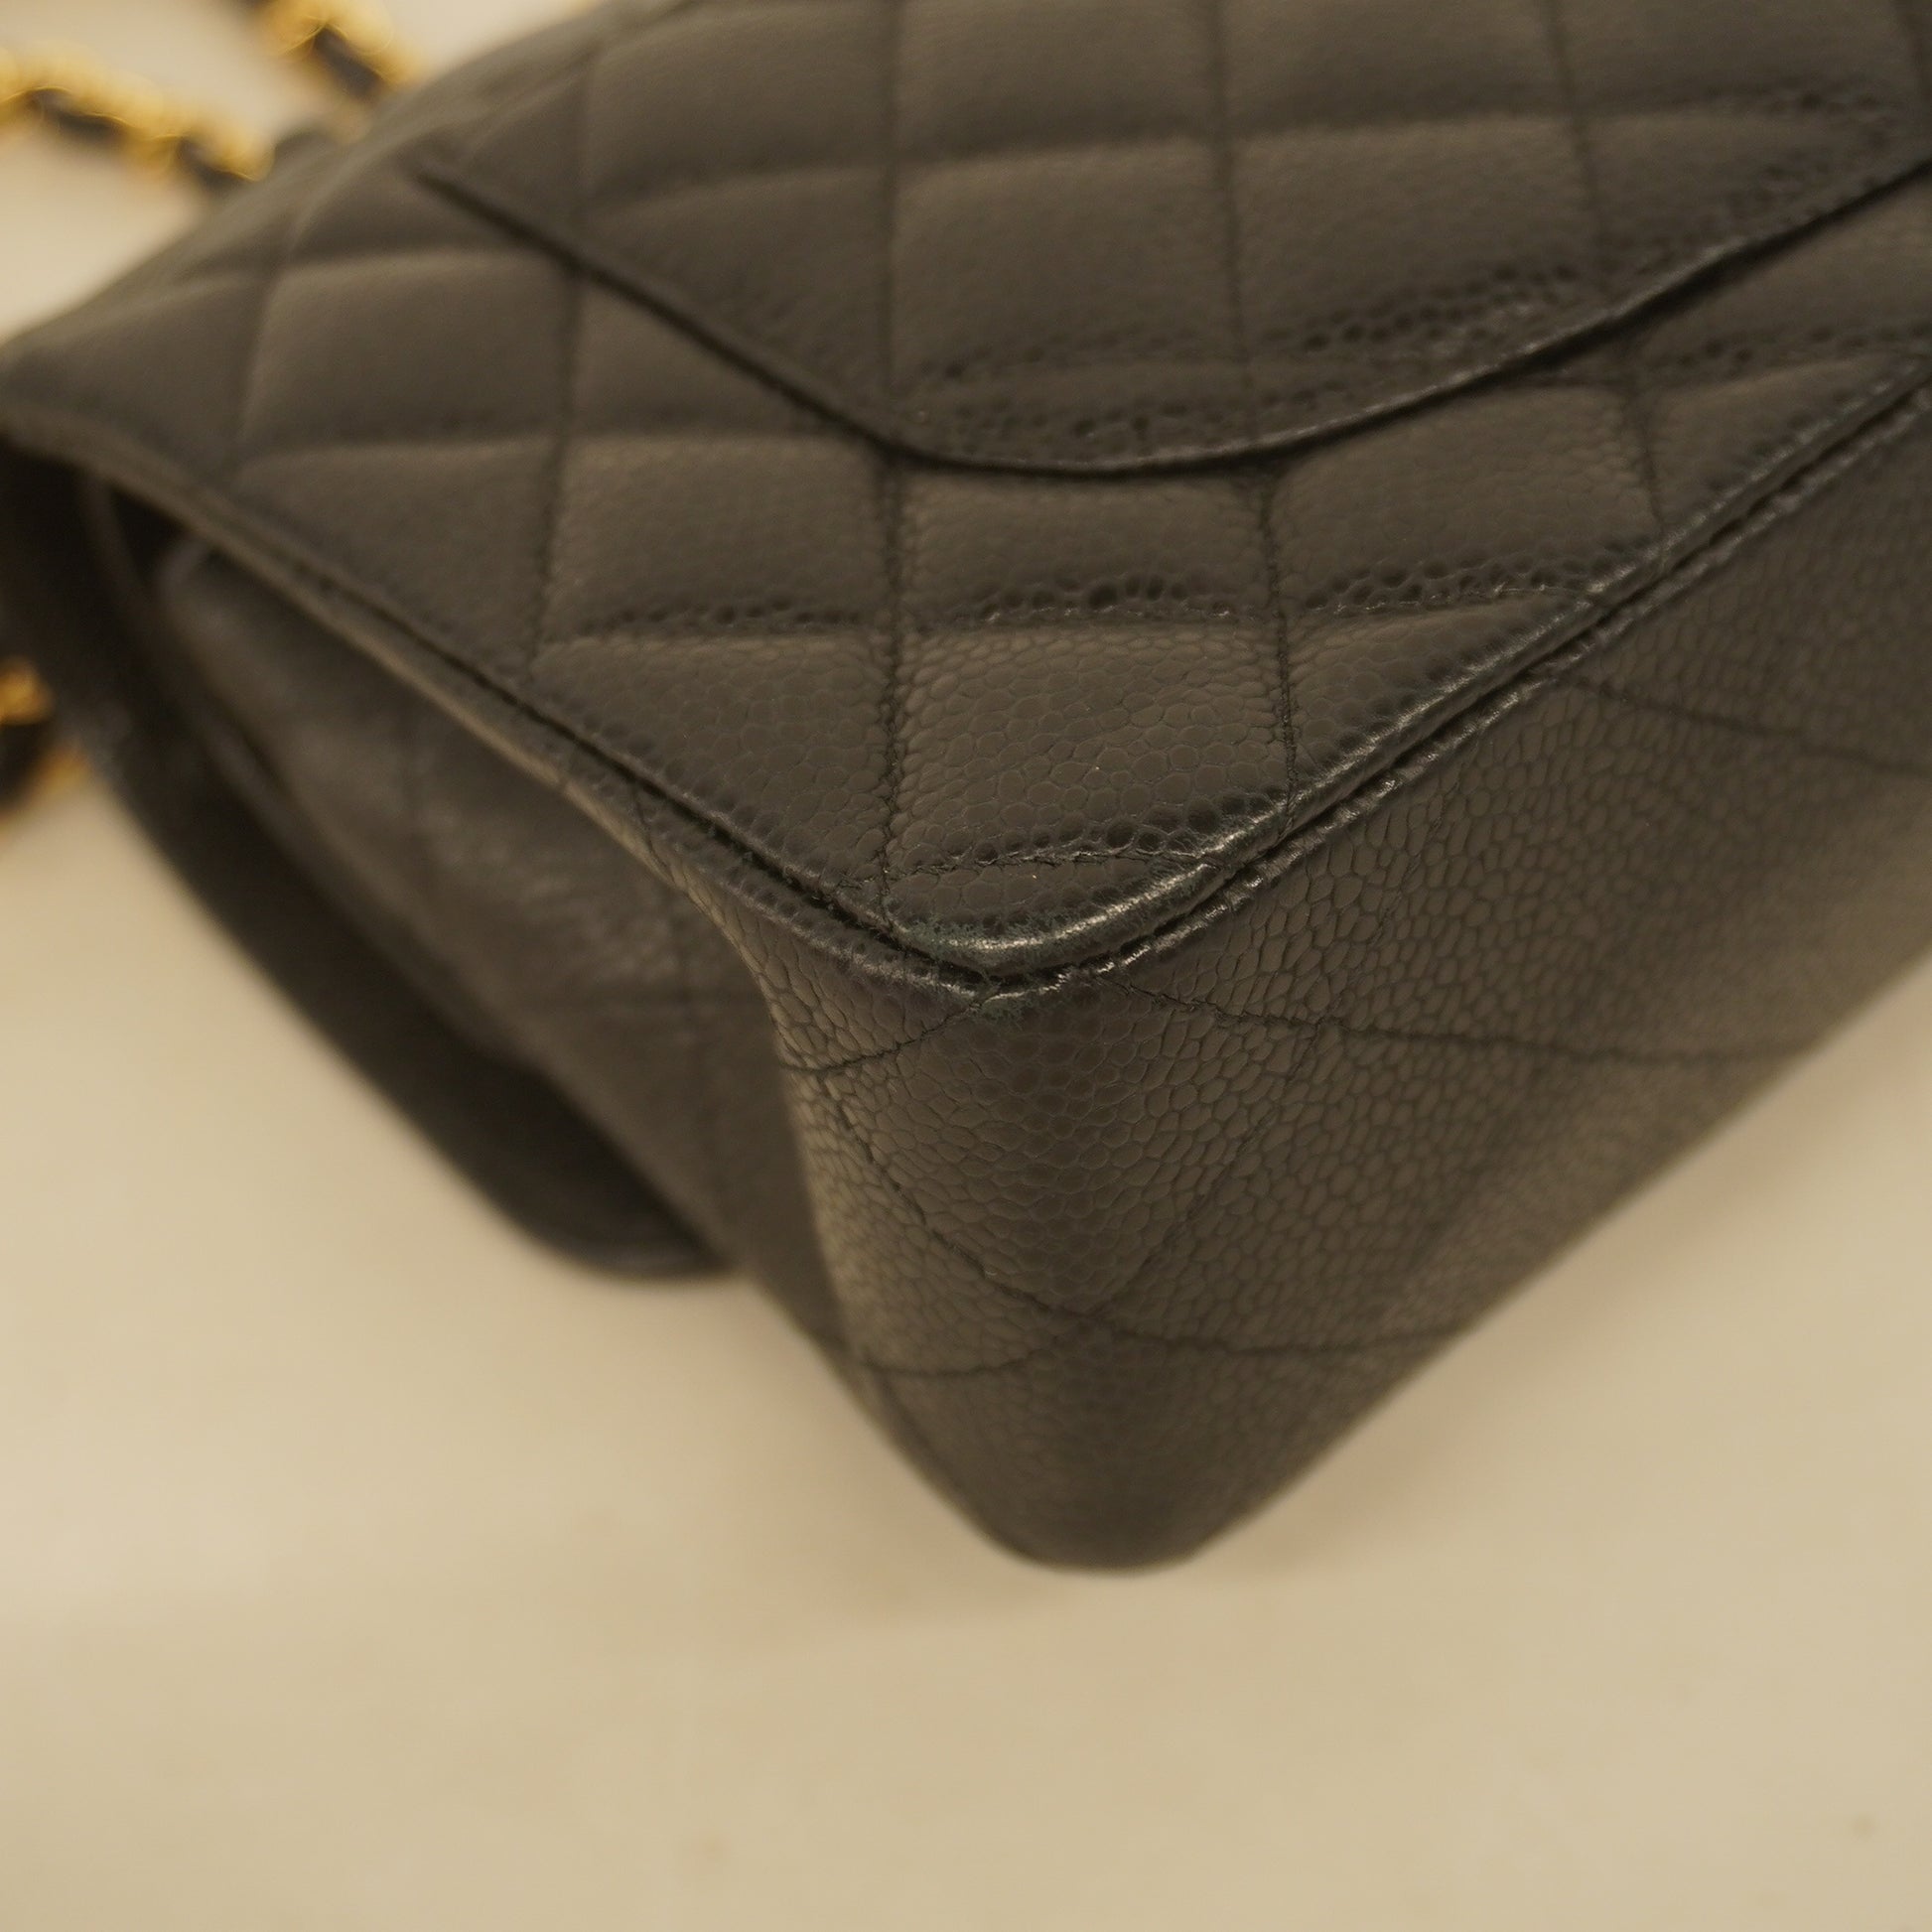 Chanel Matelasse W Flap W Chain Shoulder Bag Lambskin Women's Black